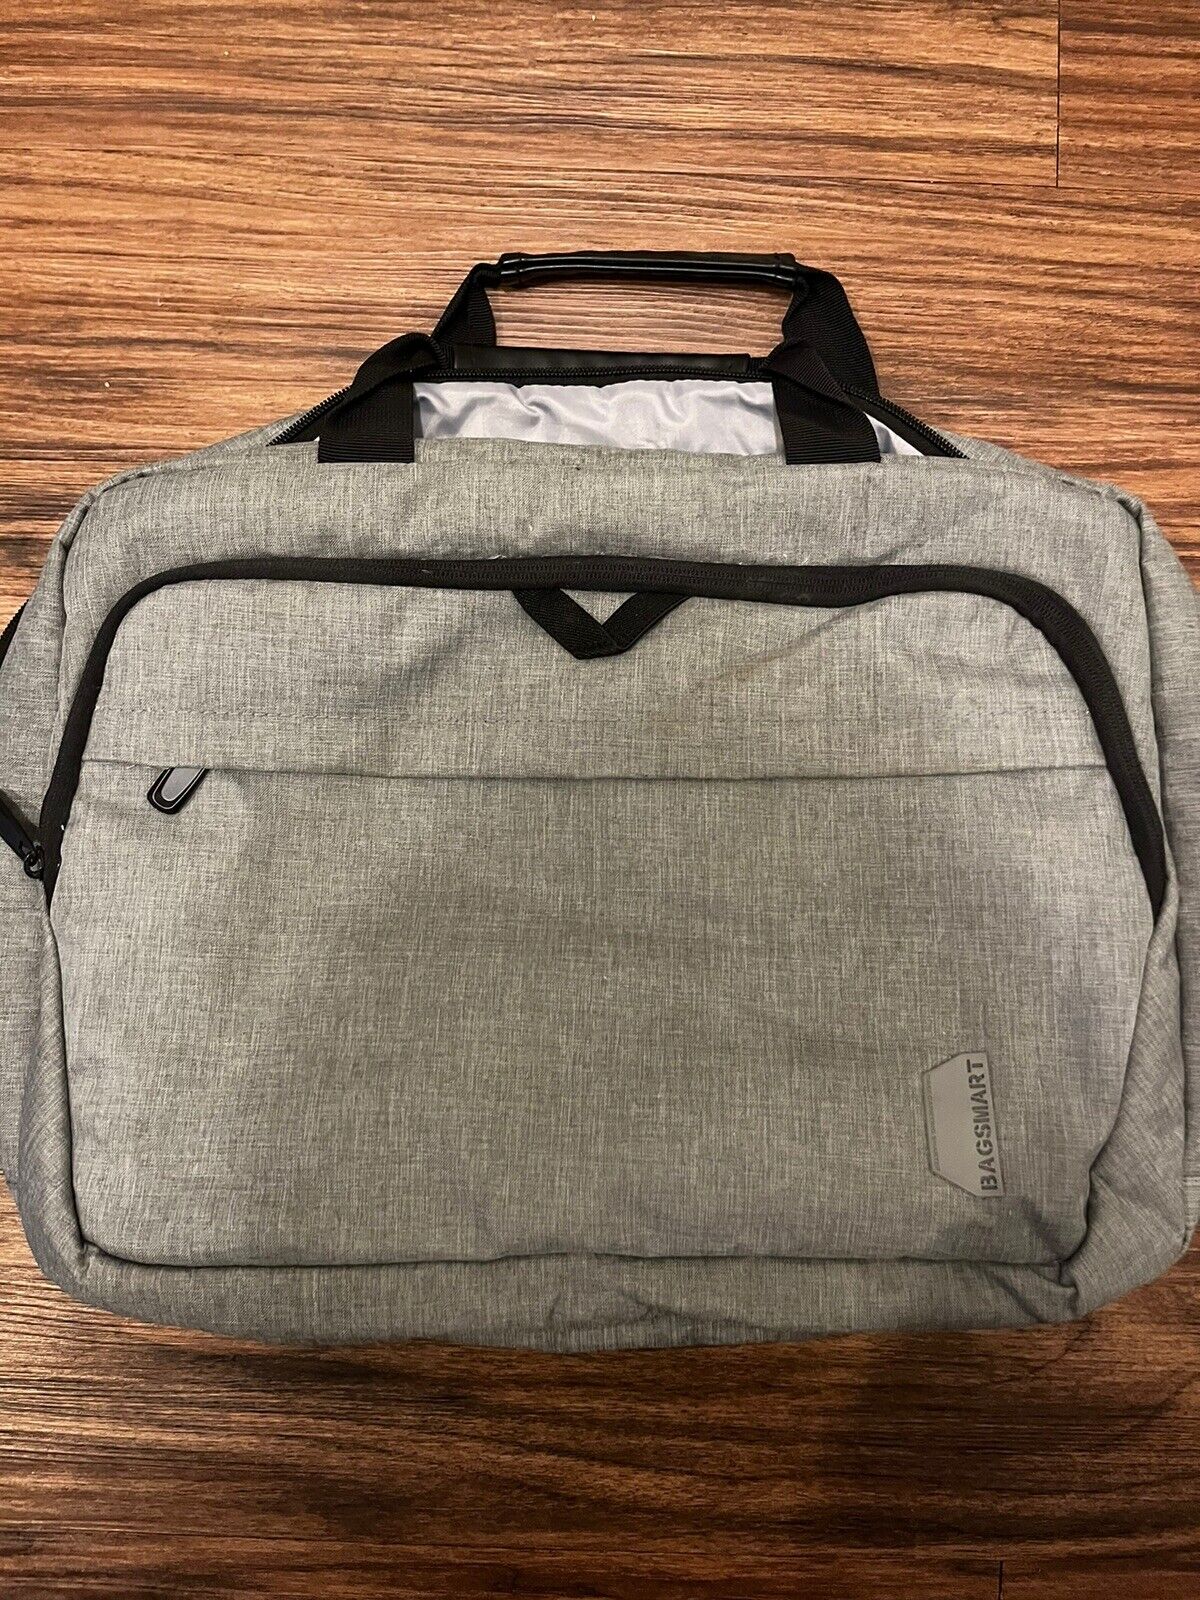 BAGSMART 17.3 Inch Laptop Bag, Expandable Laptop Bag Briefcase-Grey